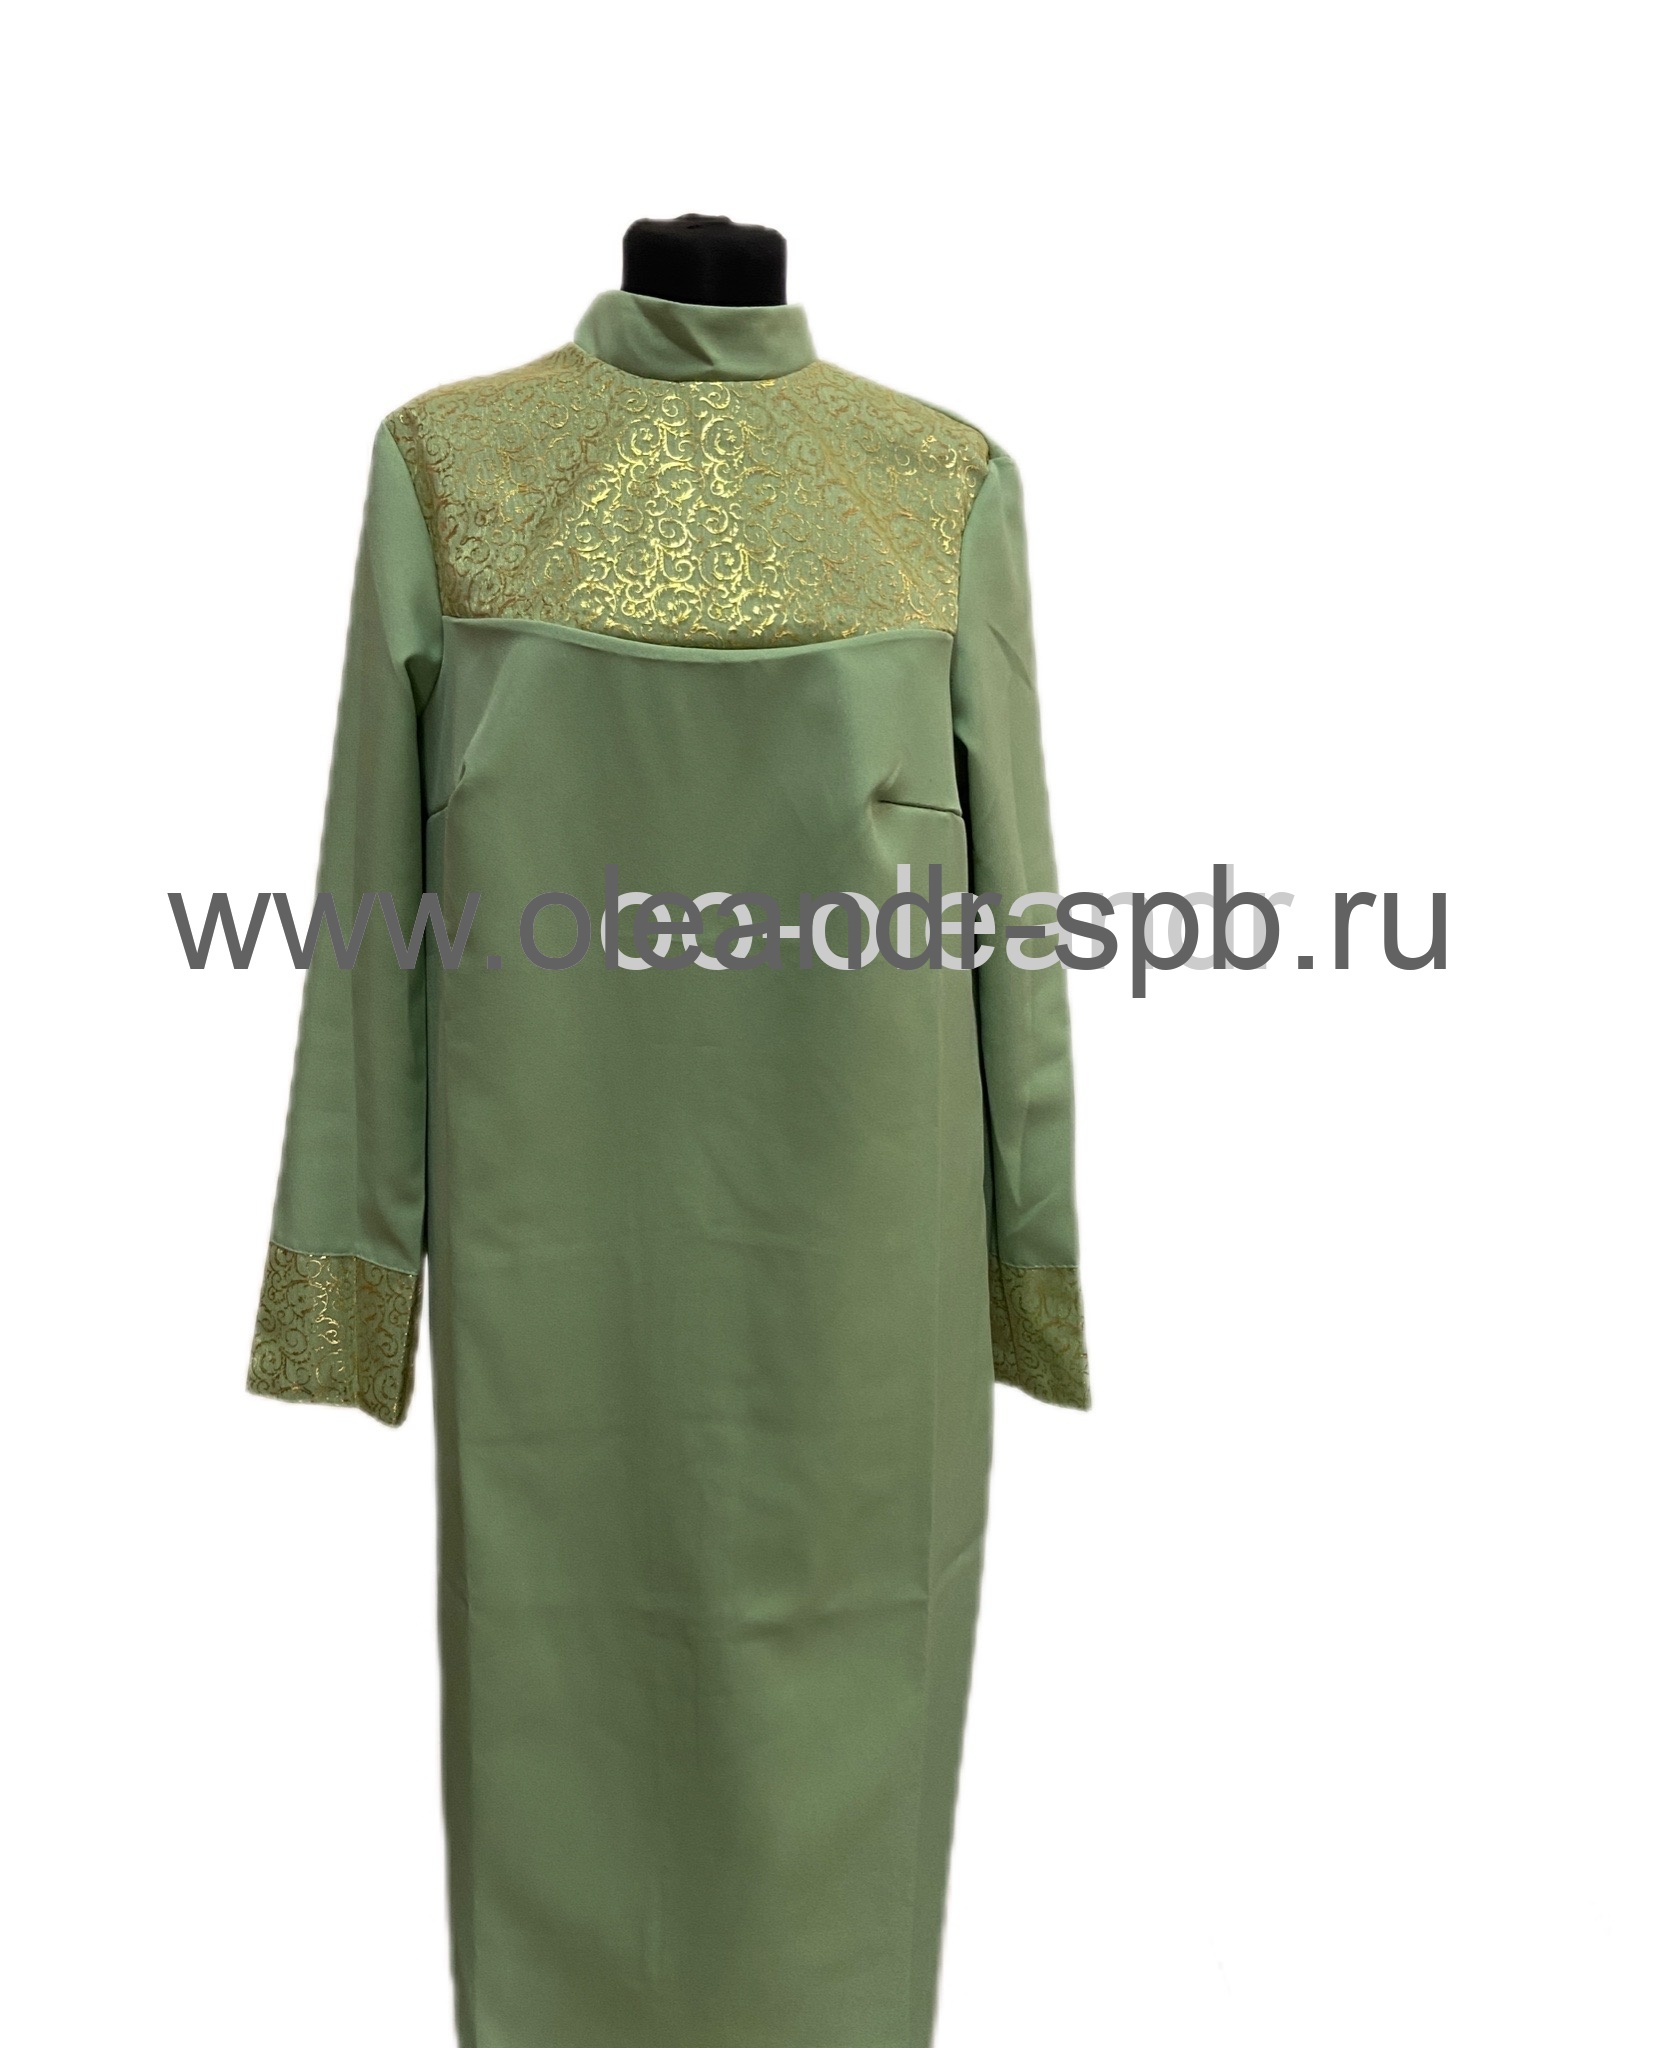 Т5119 Платье габардиновое отделка гипюр с золотом